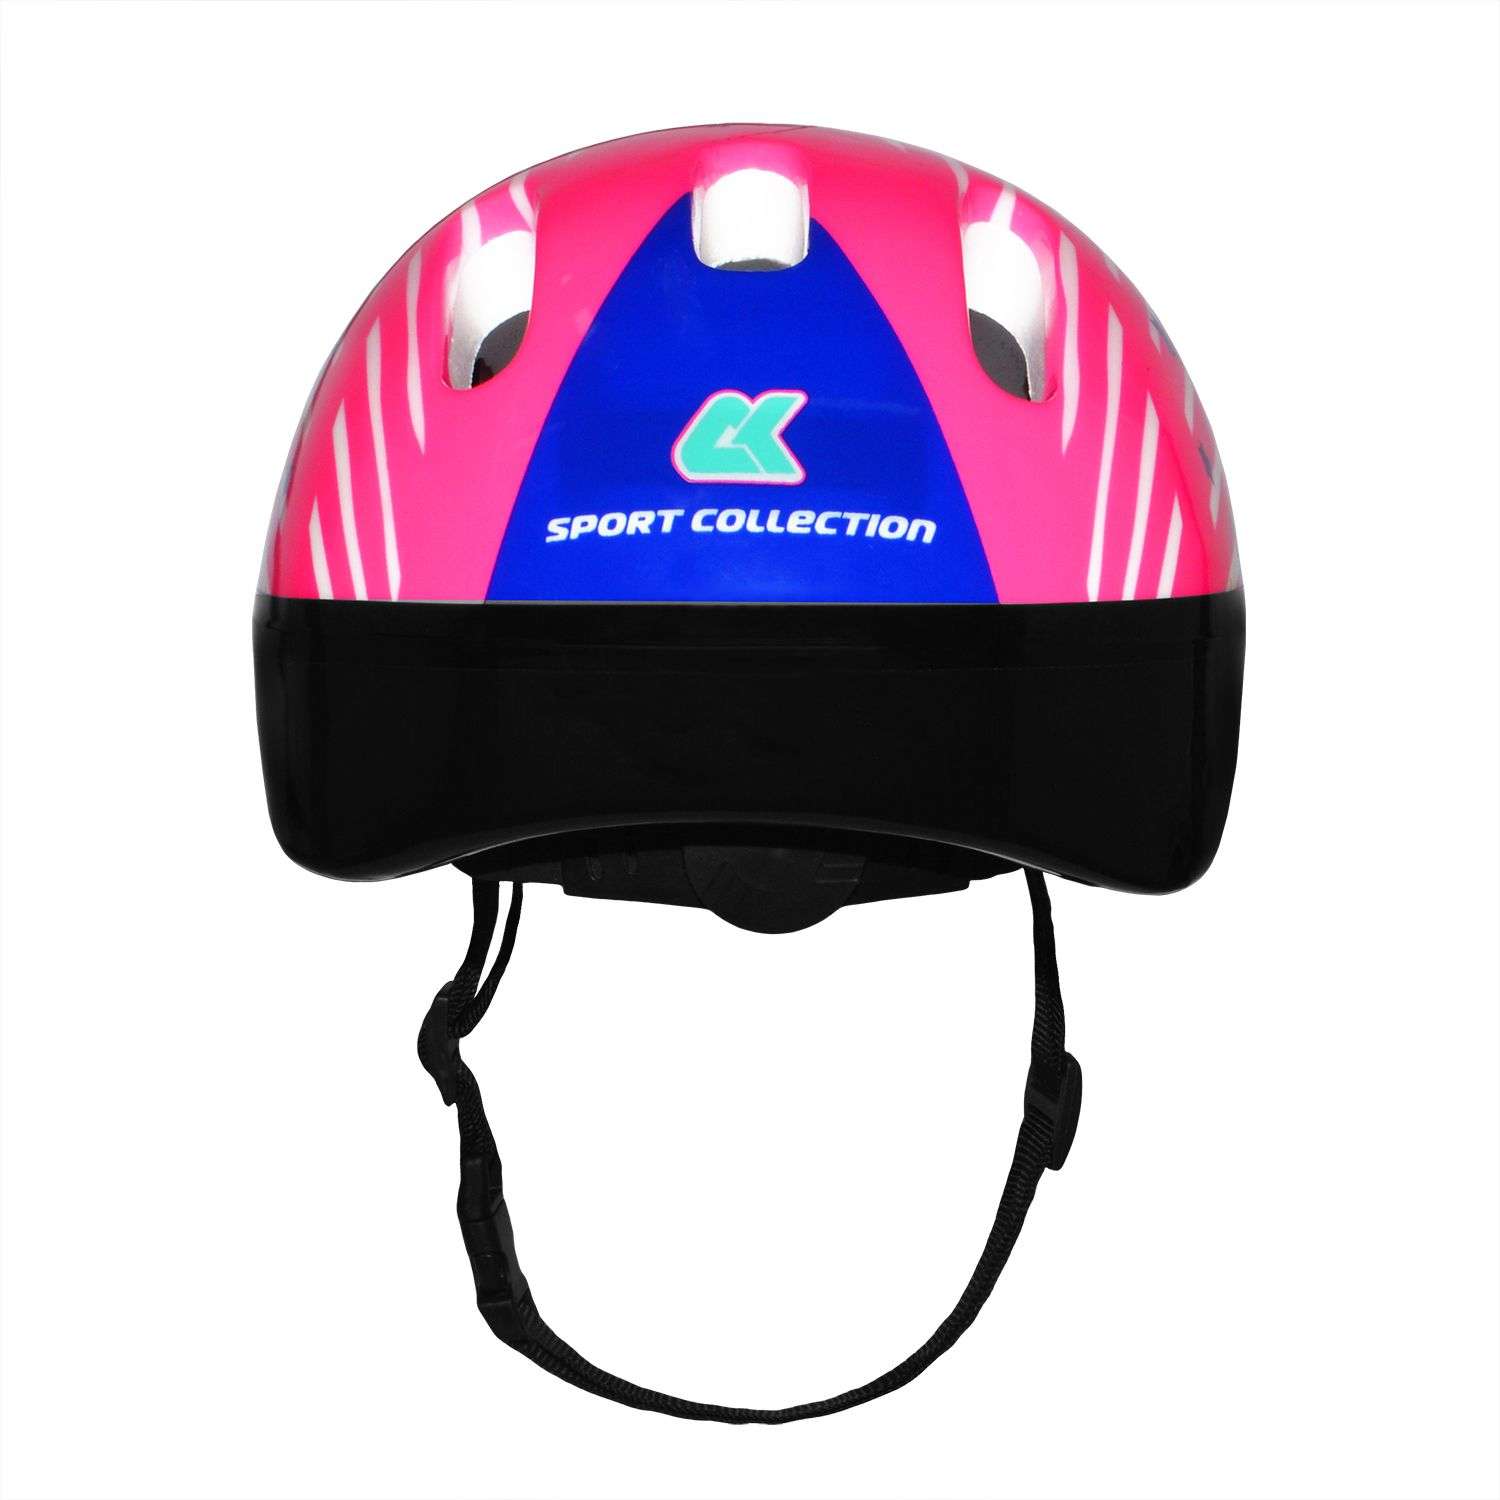 Роликовый комплект Sport Collection в сумке SET Festival Pink ролики р. 34-37 Шлем 50-56 Защита S/M - фото 5